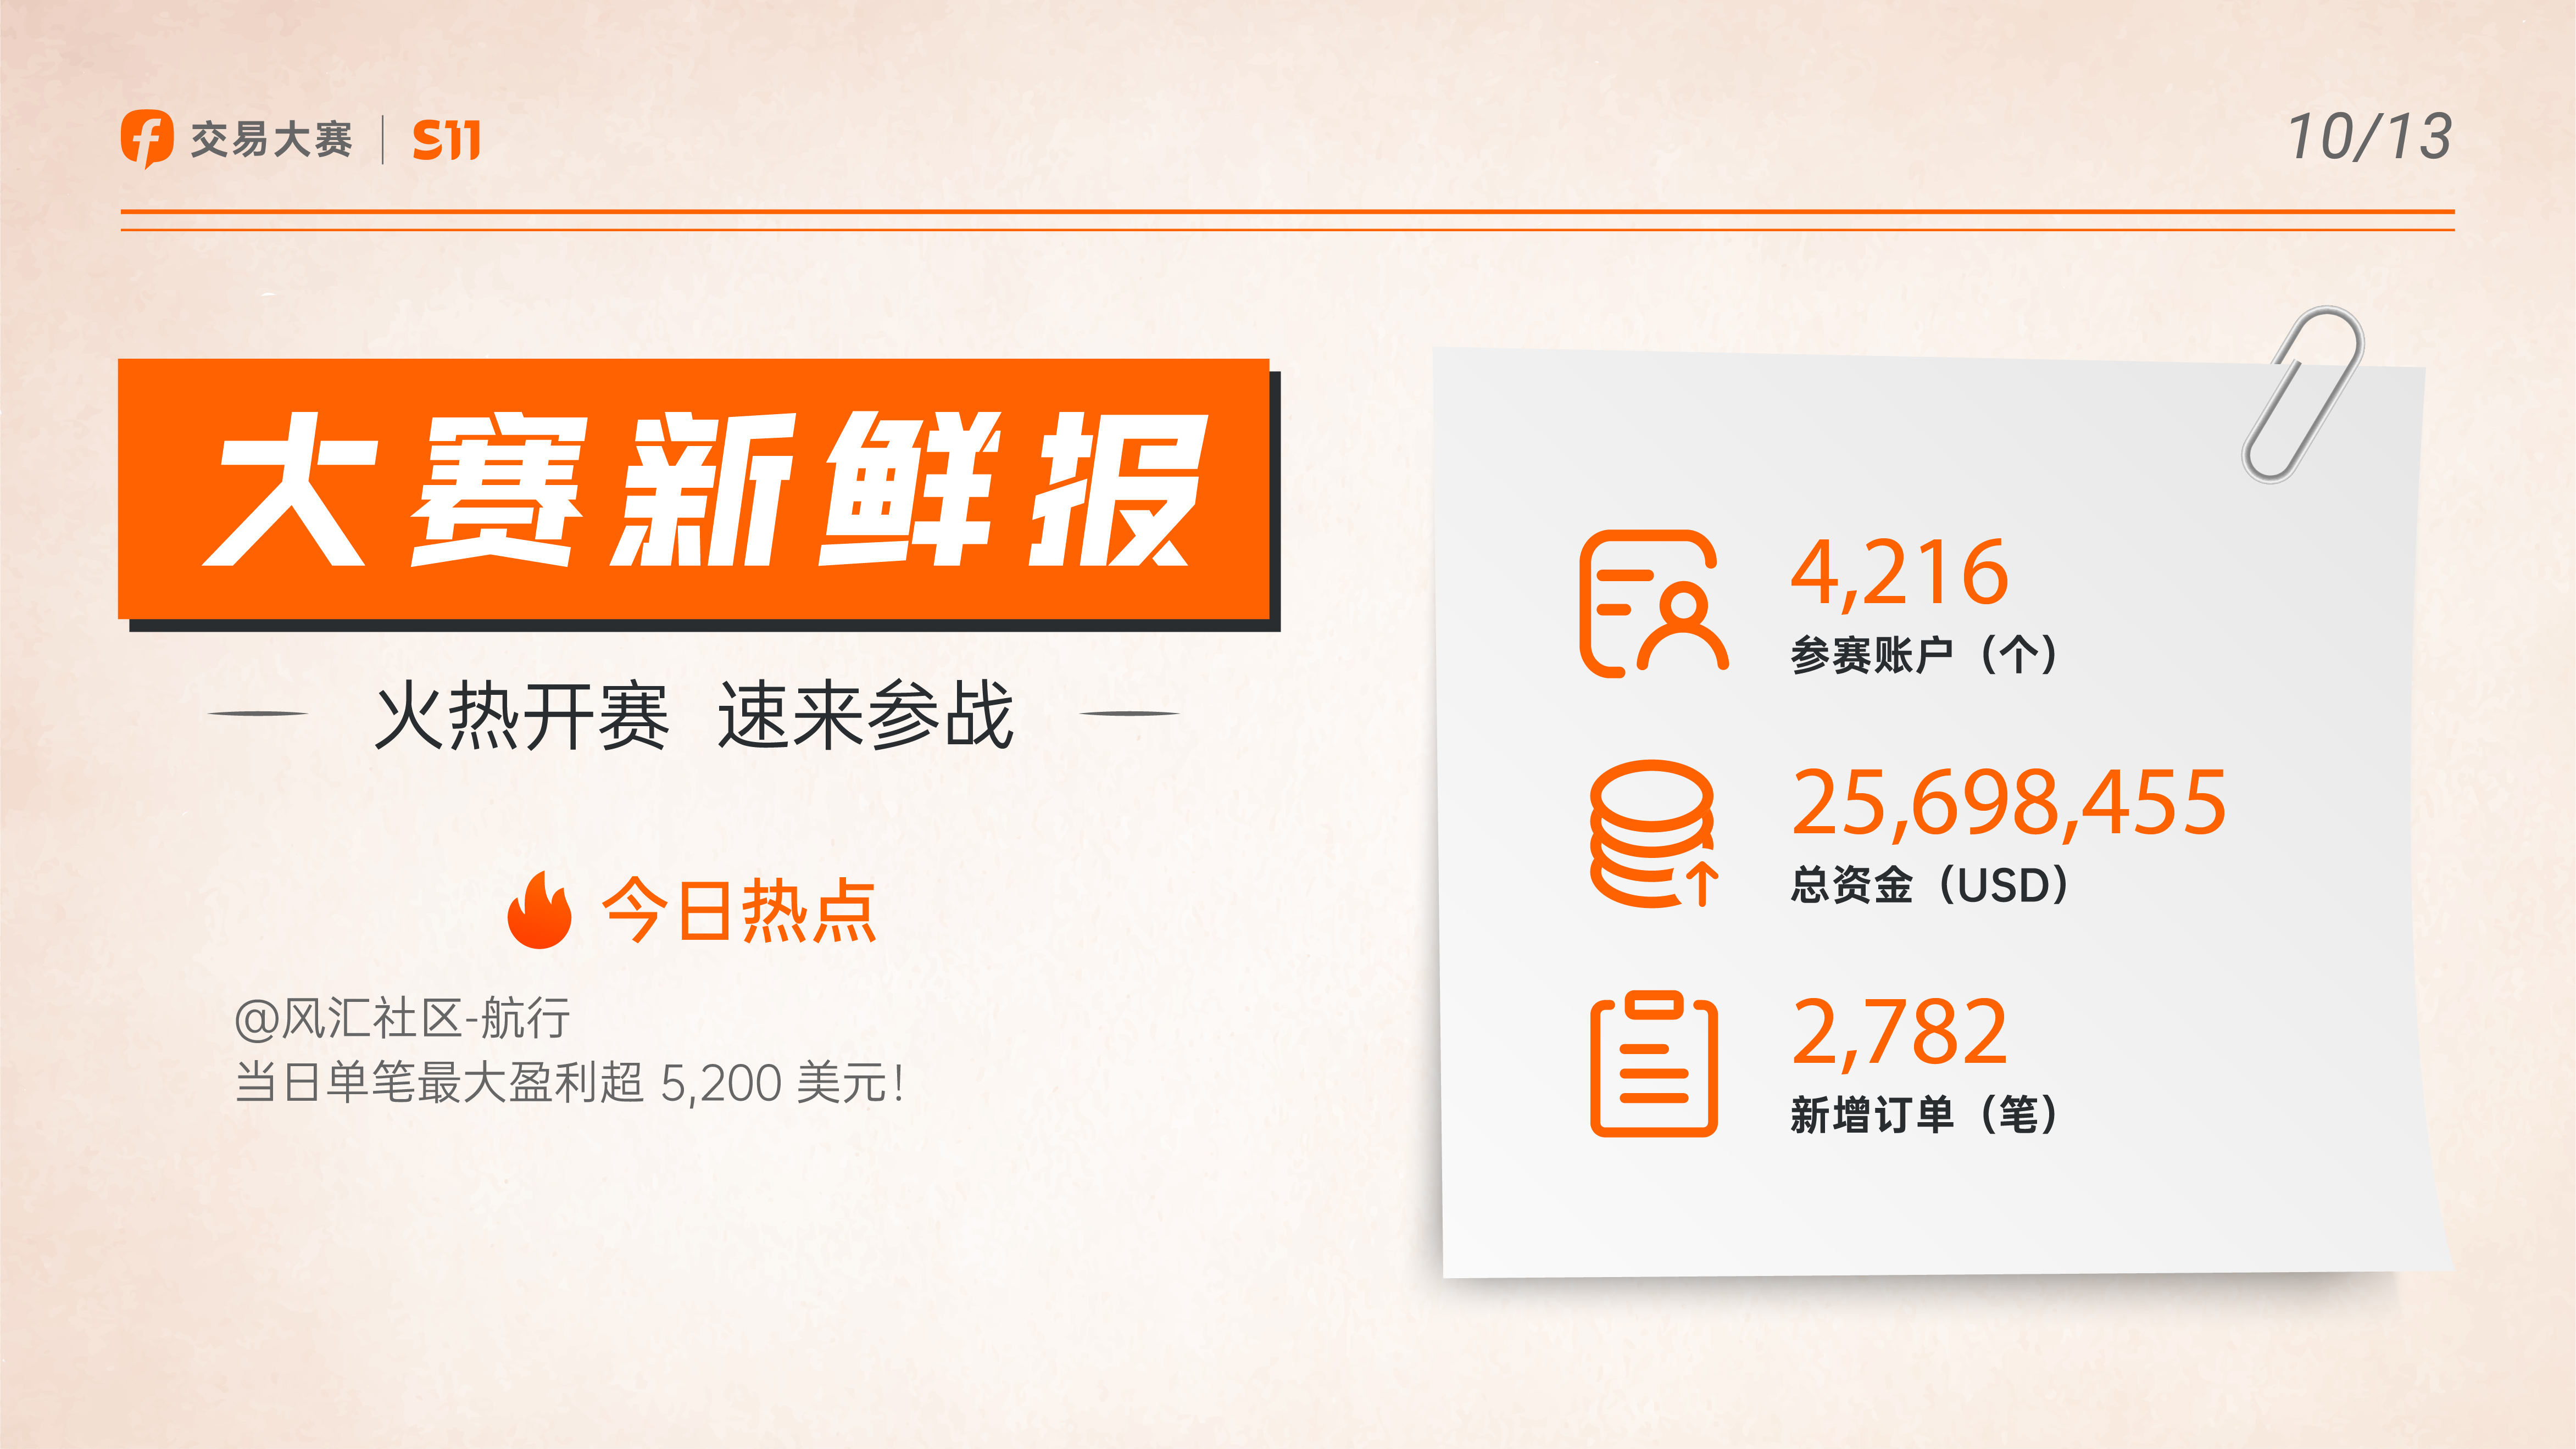 1013大赛新鲜报丨喜讯连连，总参赛账户已破4,200 个！